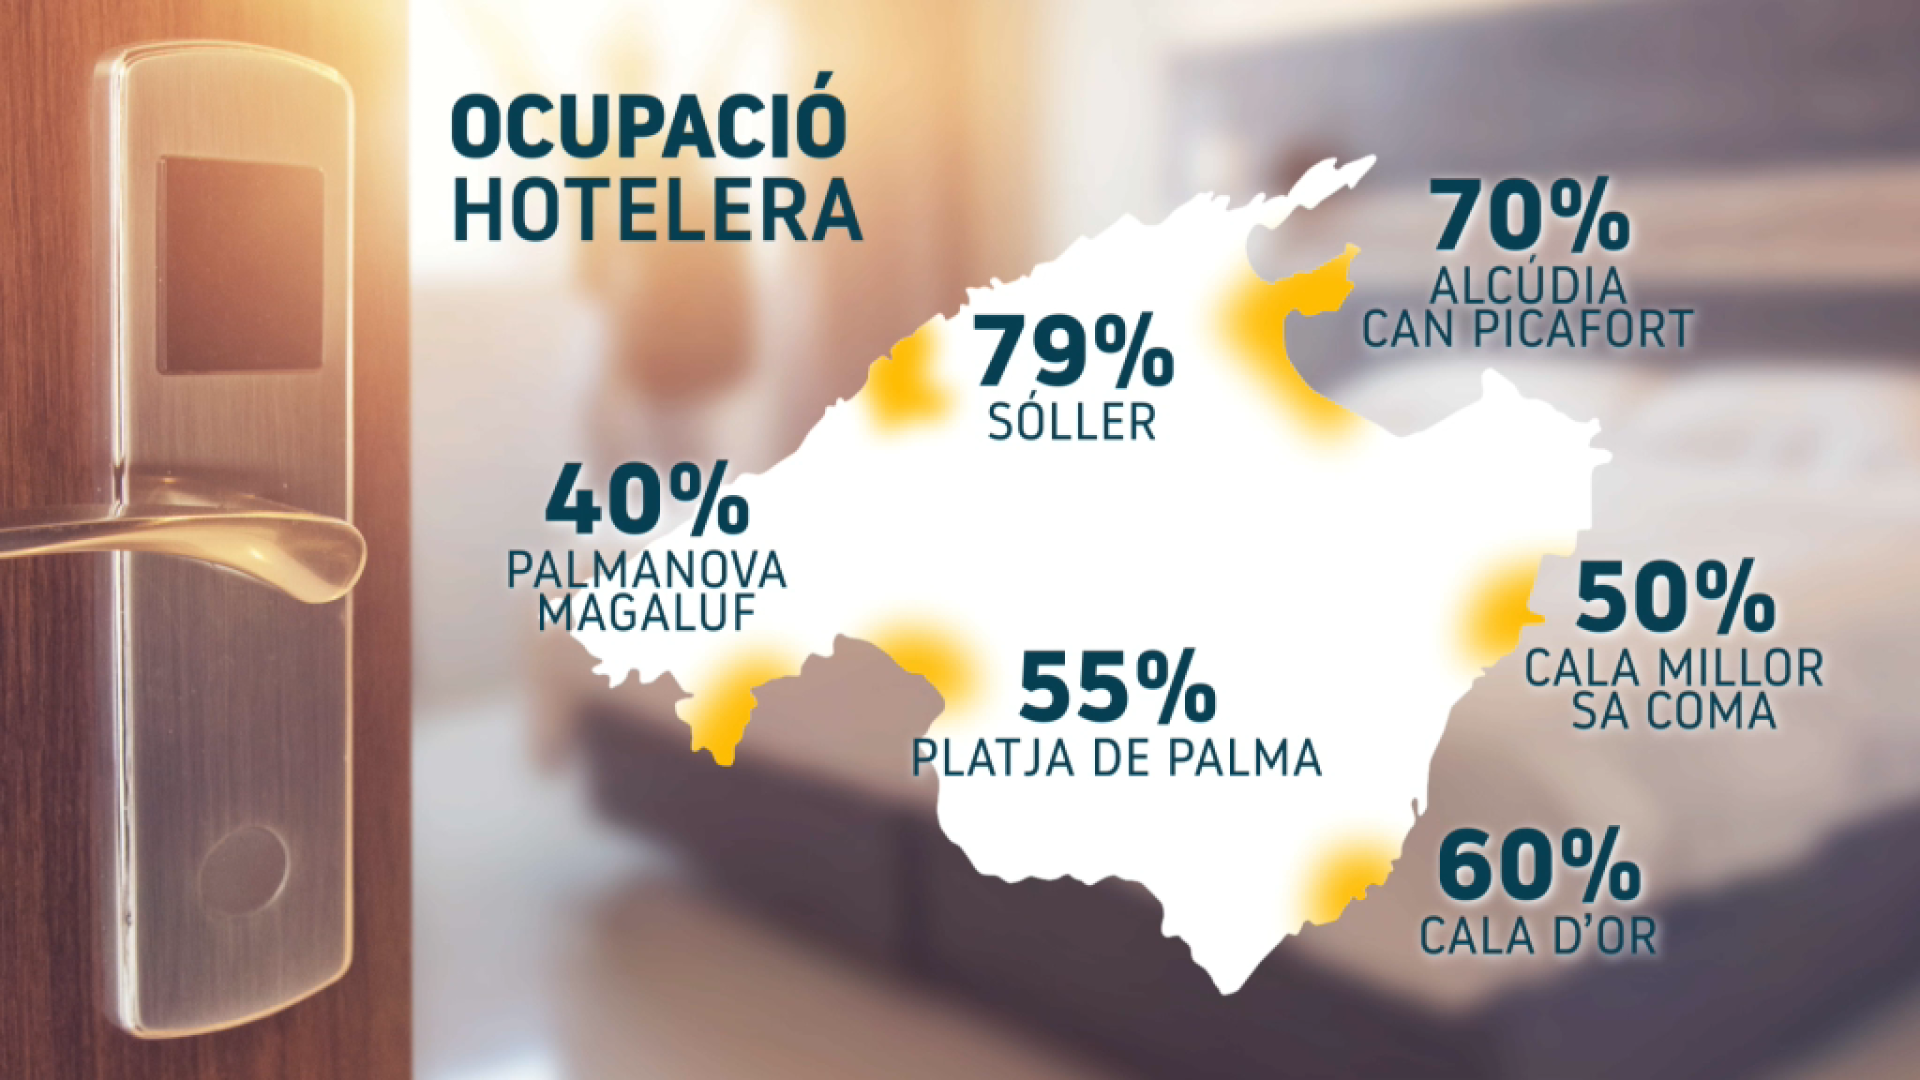 Sóller és el municipi amb millors dades d’ocupació hotelera de Mallorca